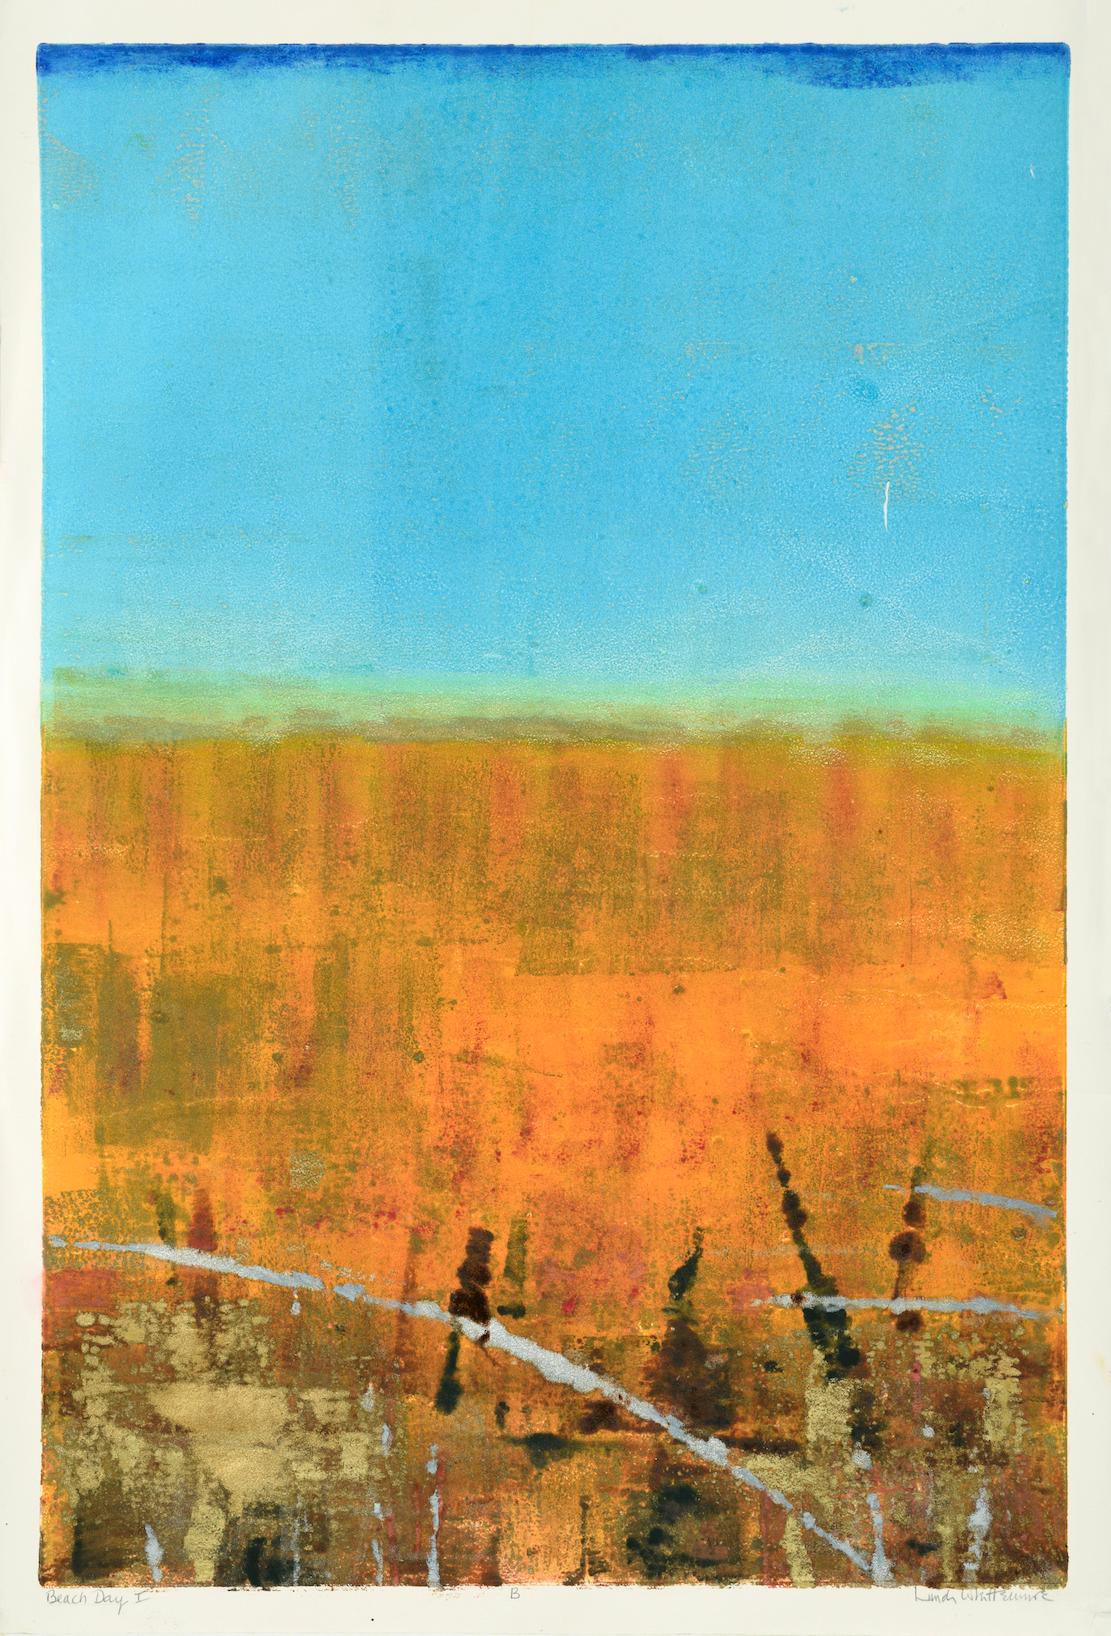 Linda Whittemore Abstract Print – ""Beach Day '1B'" Mixed Media Abstrakt mit kräftigen Blautönen, Kupfer- und Goldakzenten